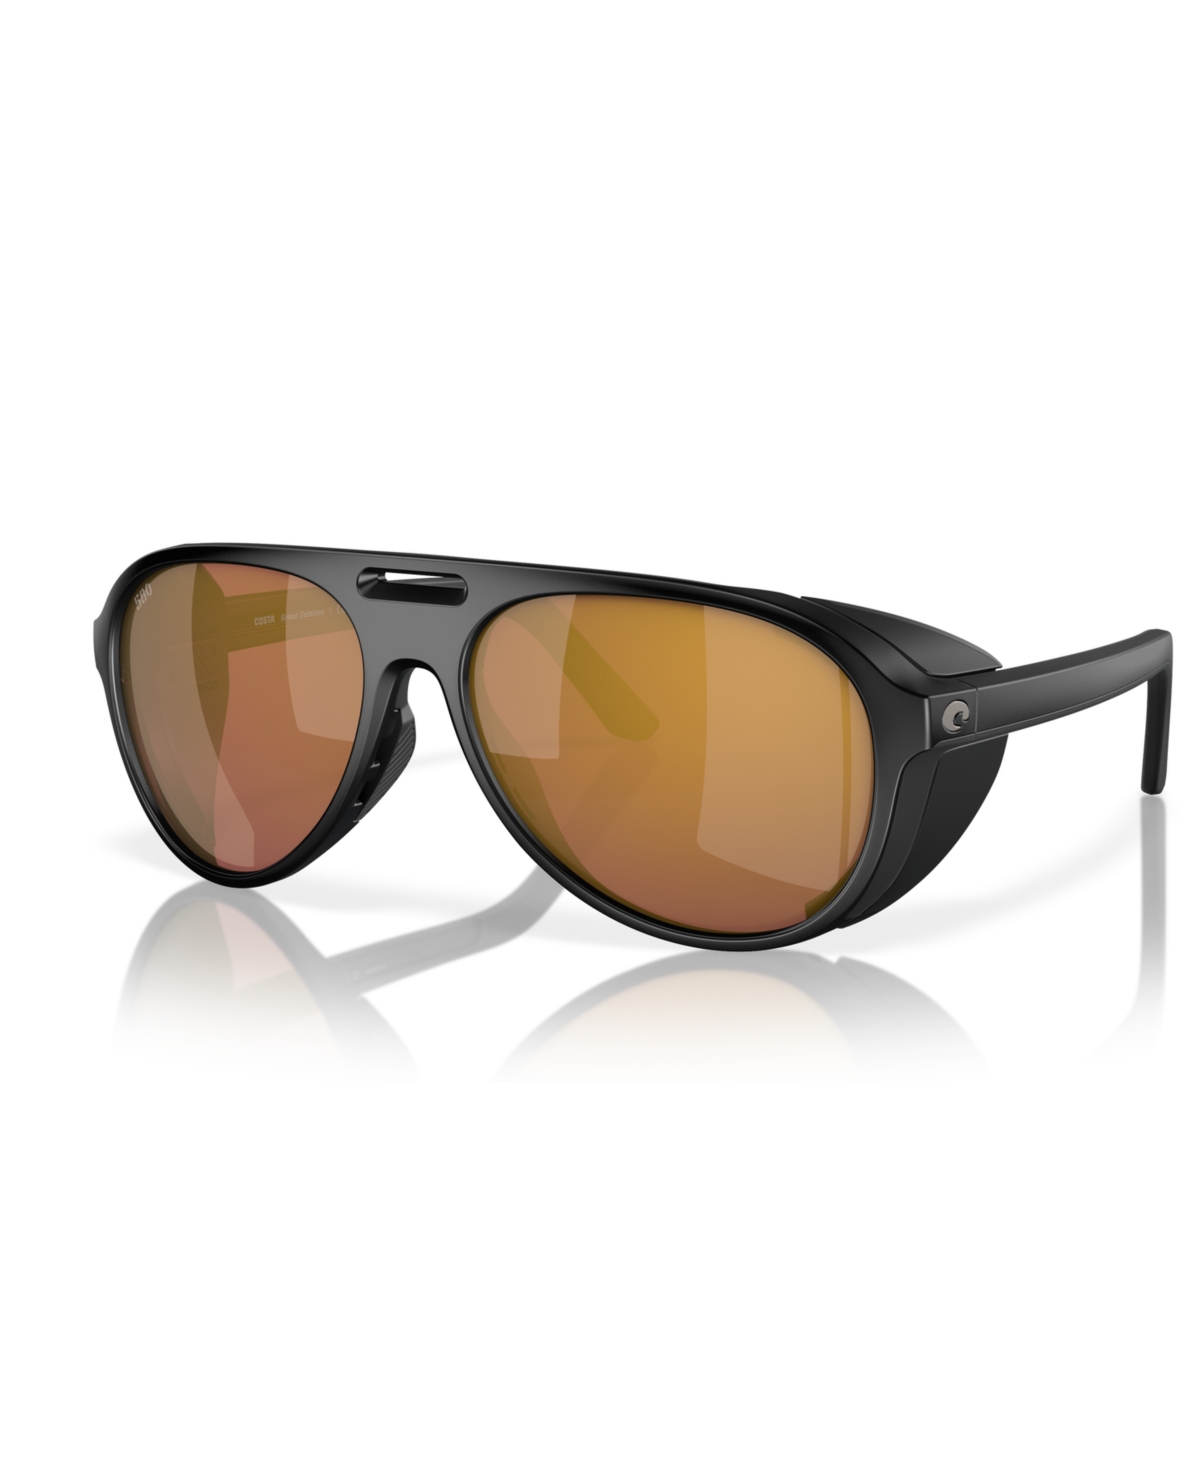 Costa Del Mar Men's Polarized Sunglasses, Grand Catalina 6s9117 In Matte Black,gold